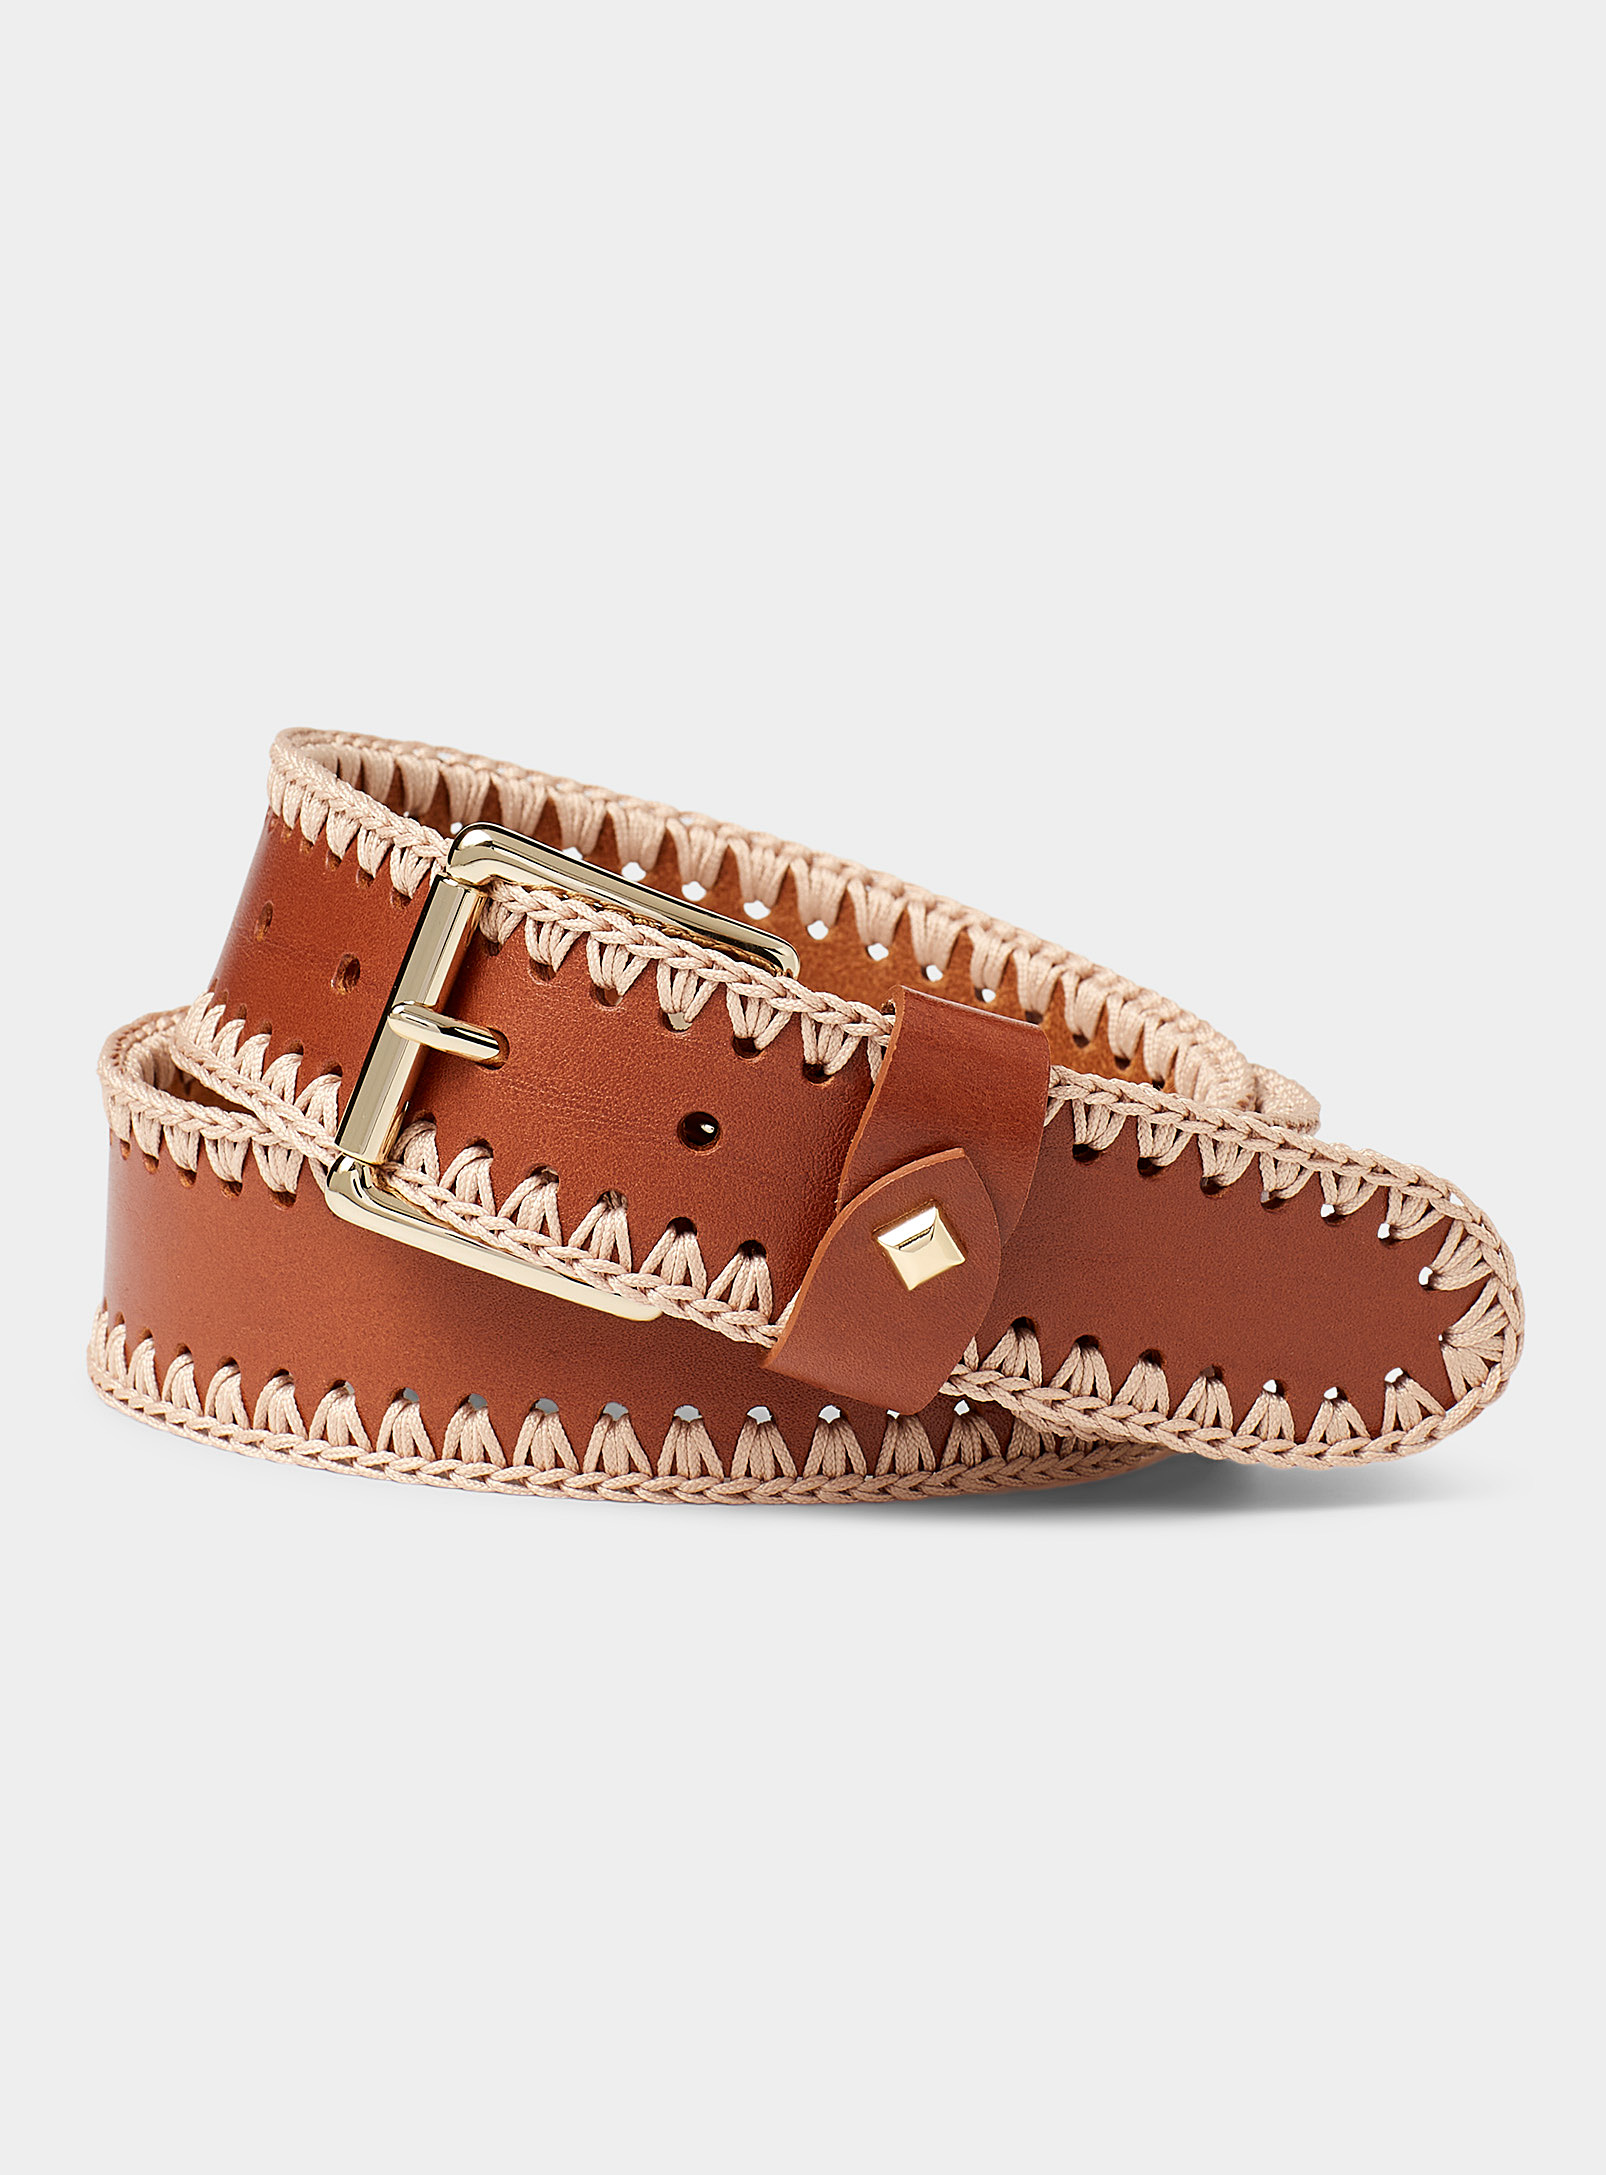 Herbert Frere Soeur Soyaux Leather And Crochet Belt In Brown